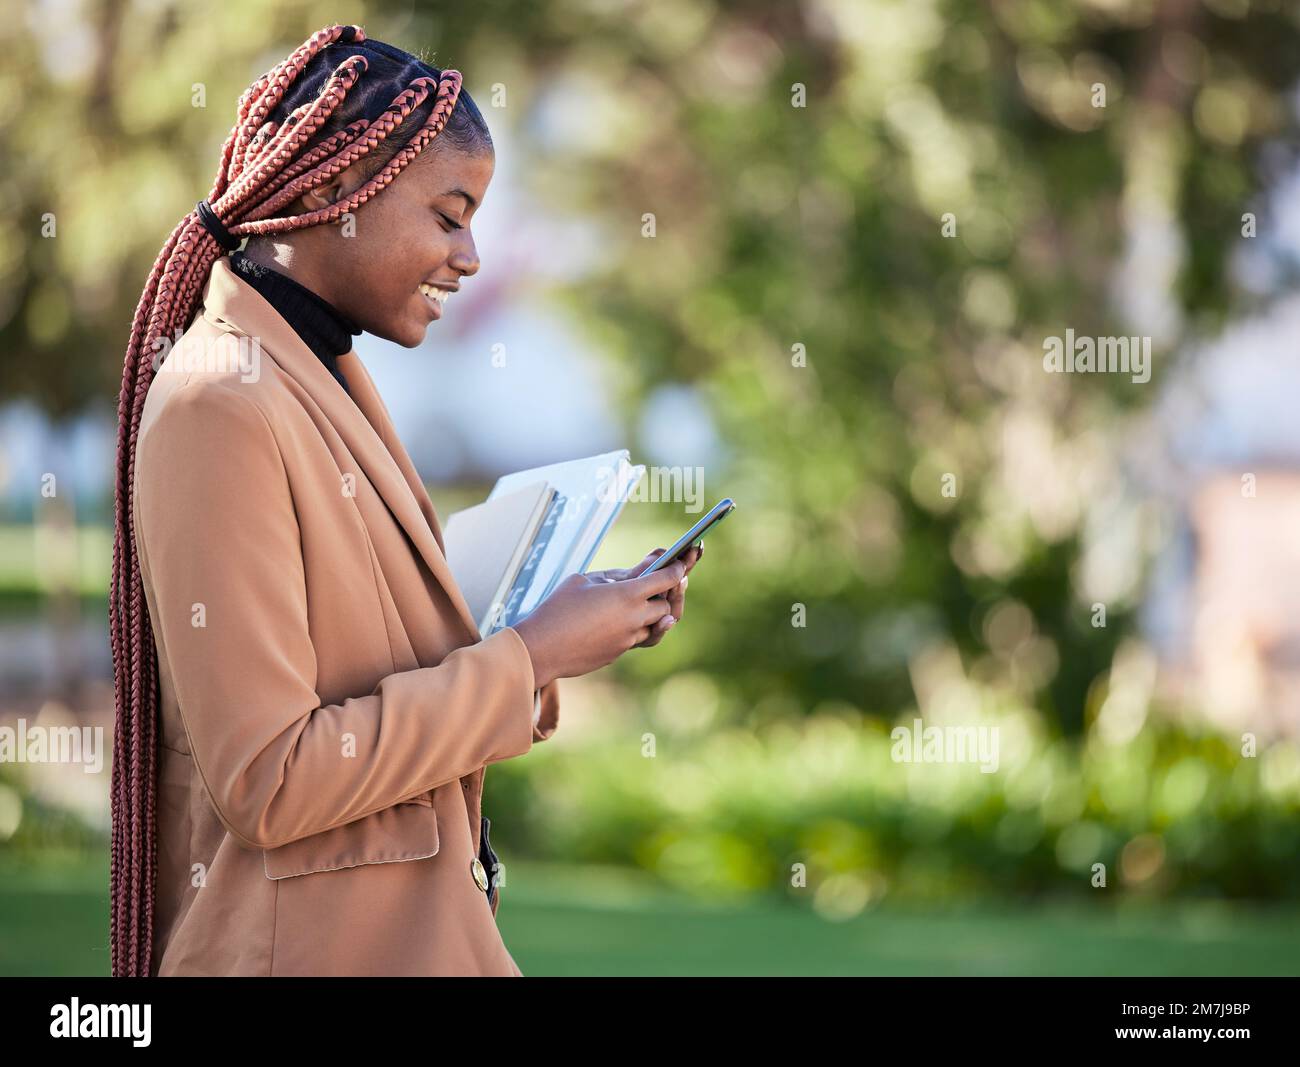 Téléphone, étudiant en bourse et femme noire au parc sur les médias sociaux, la recherche ou l'envoi de SMS. Technologie, éducation et femme heureuse avec des livres sur 5g Banque D'Images